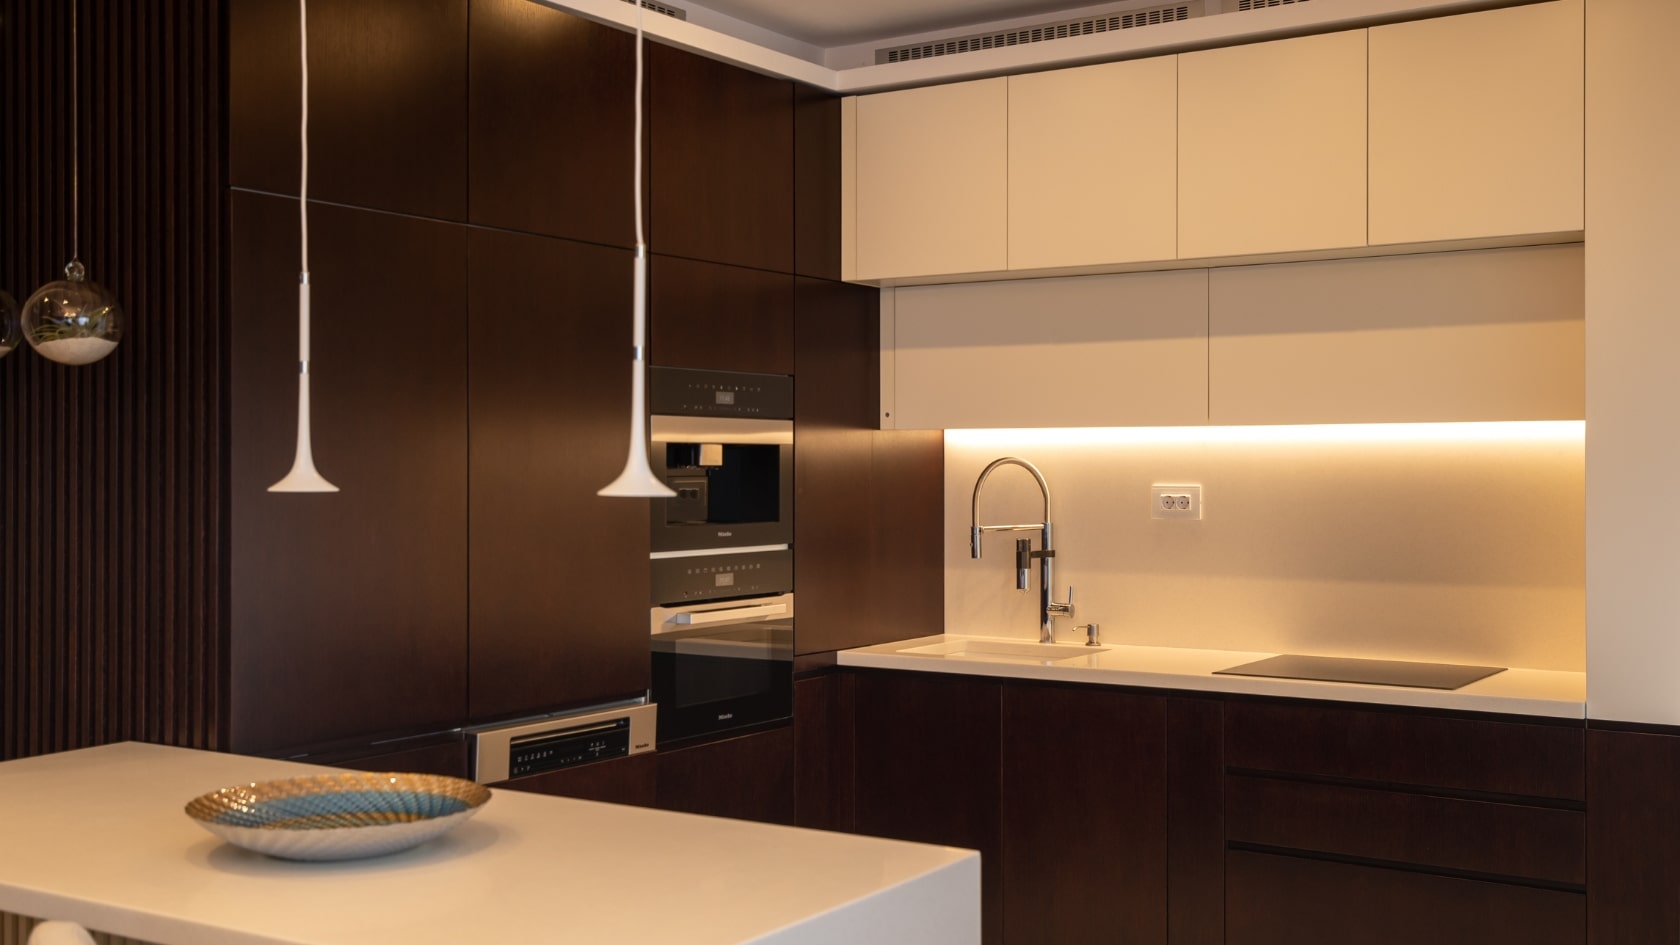 Amenajare interioara pentru o bucatarie moderna cu materiale de cea mai inalta calitate si cu o iluminare de accent cu banda LED deasupra blatului de lucru.